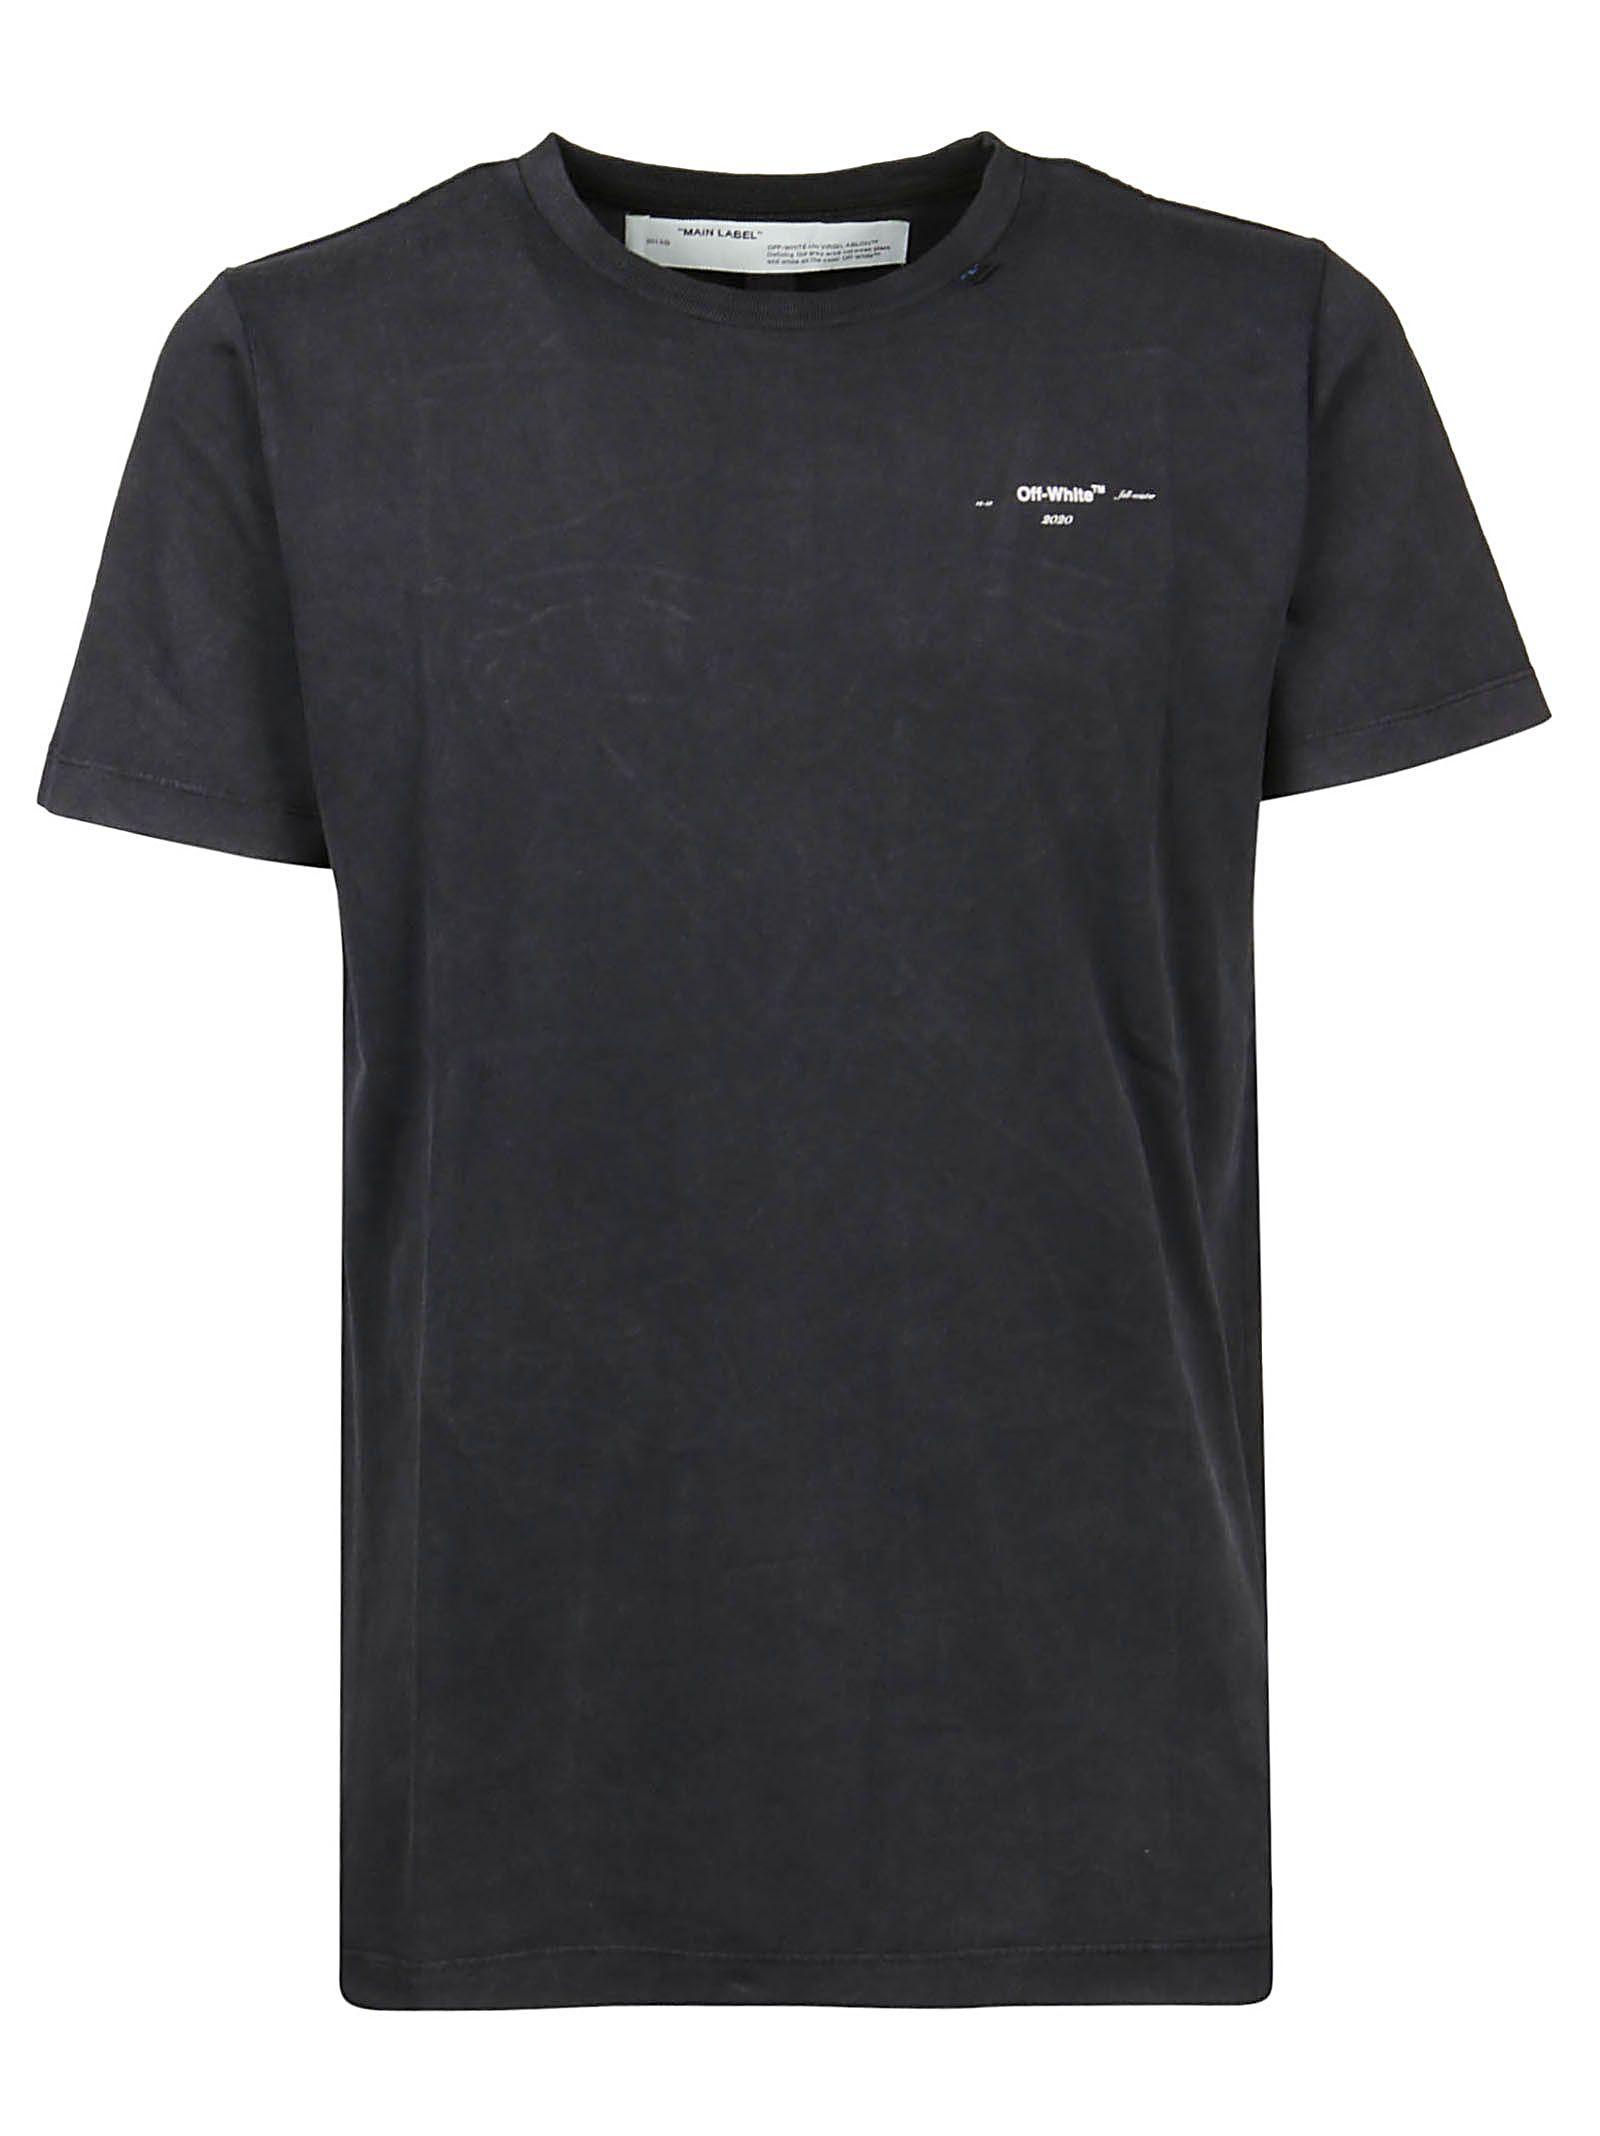 Off-White c/o Virgil Abloh Black Cotton T-shirt for Men - Lyst